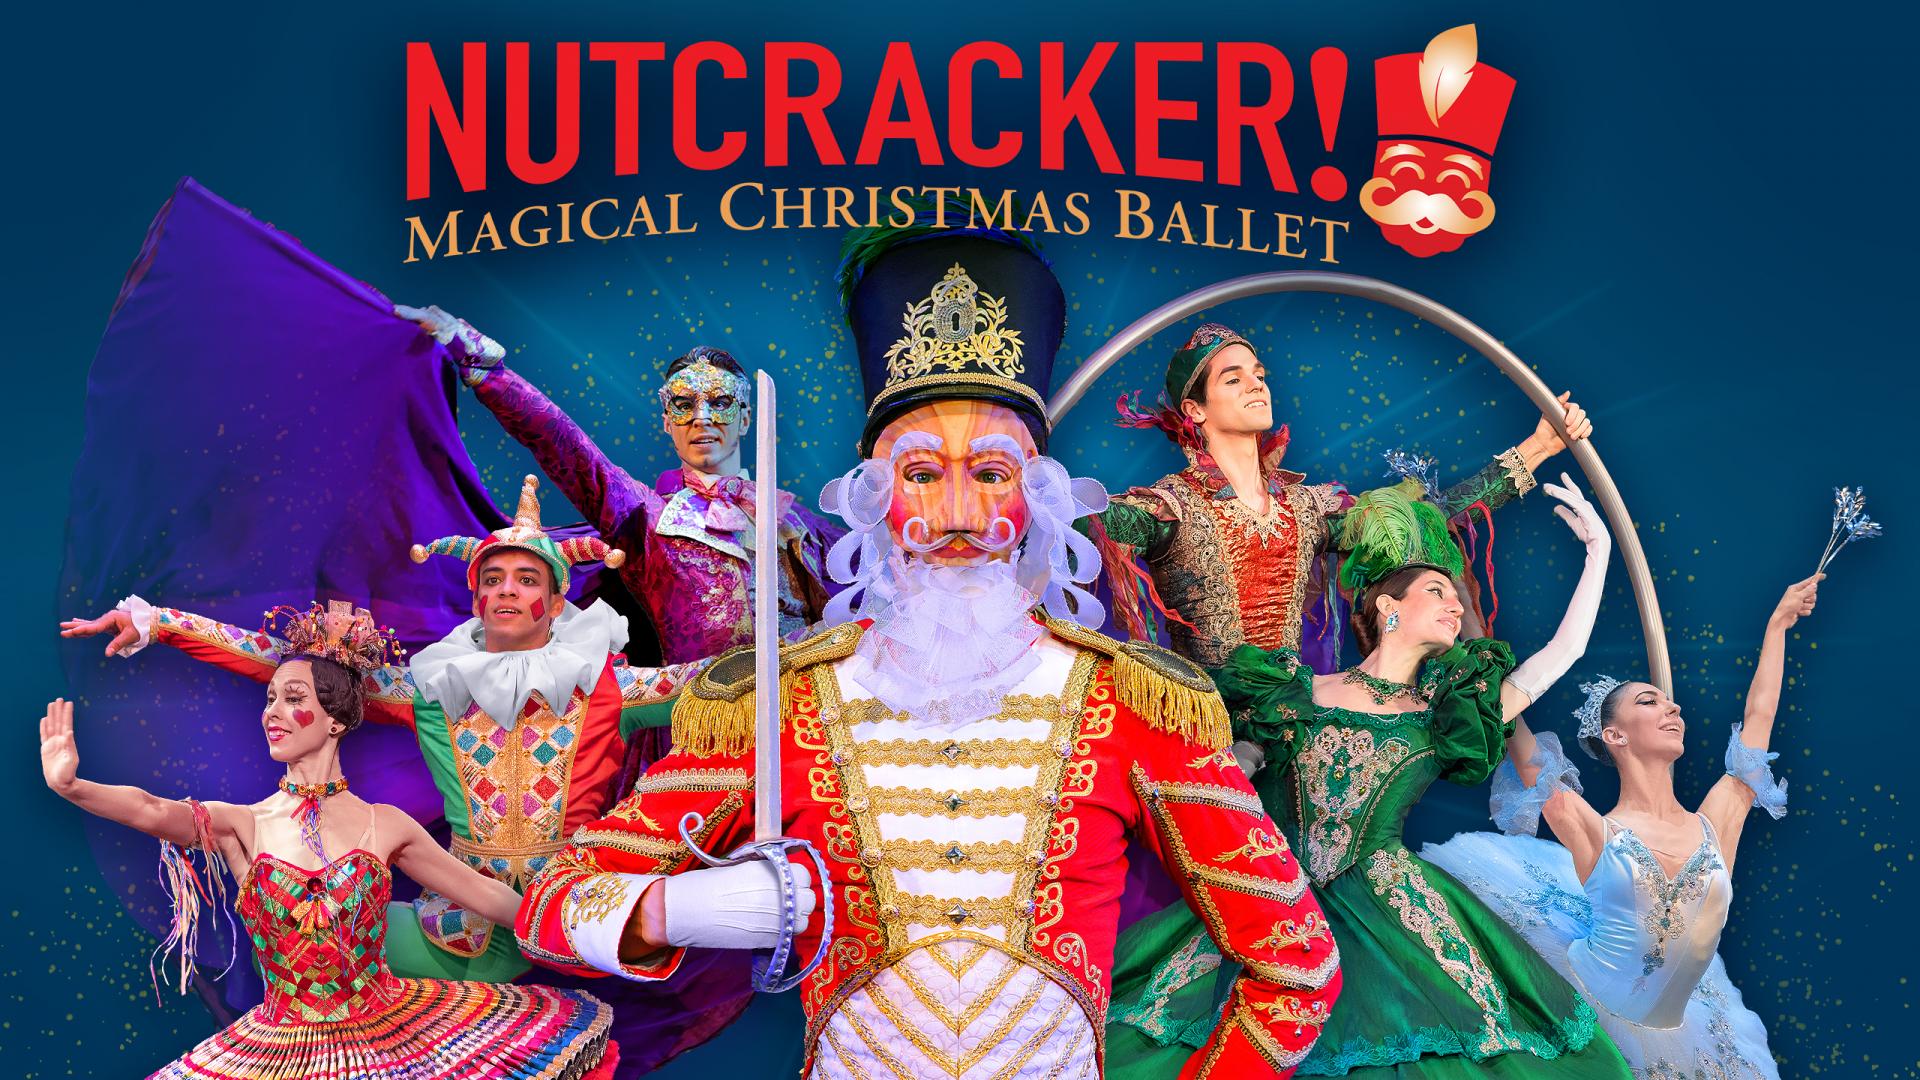 NUTCRACKER! Magical Christmas Ballet!